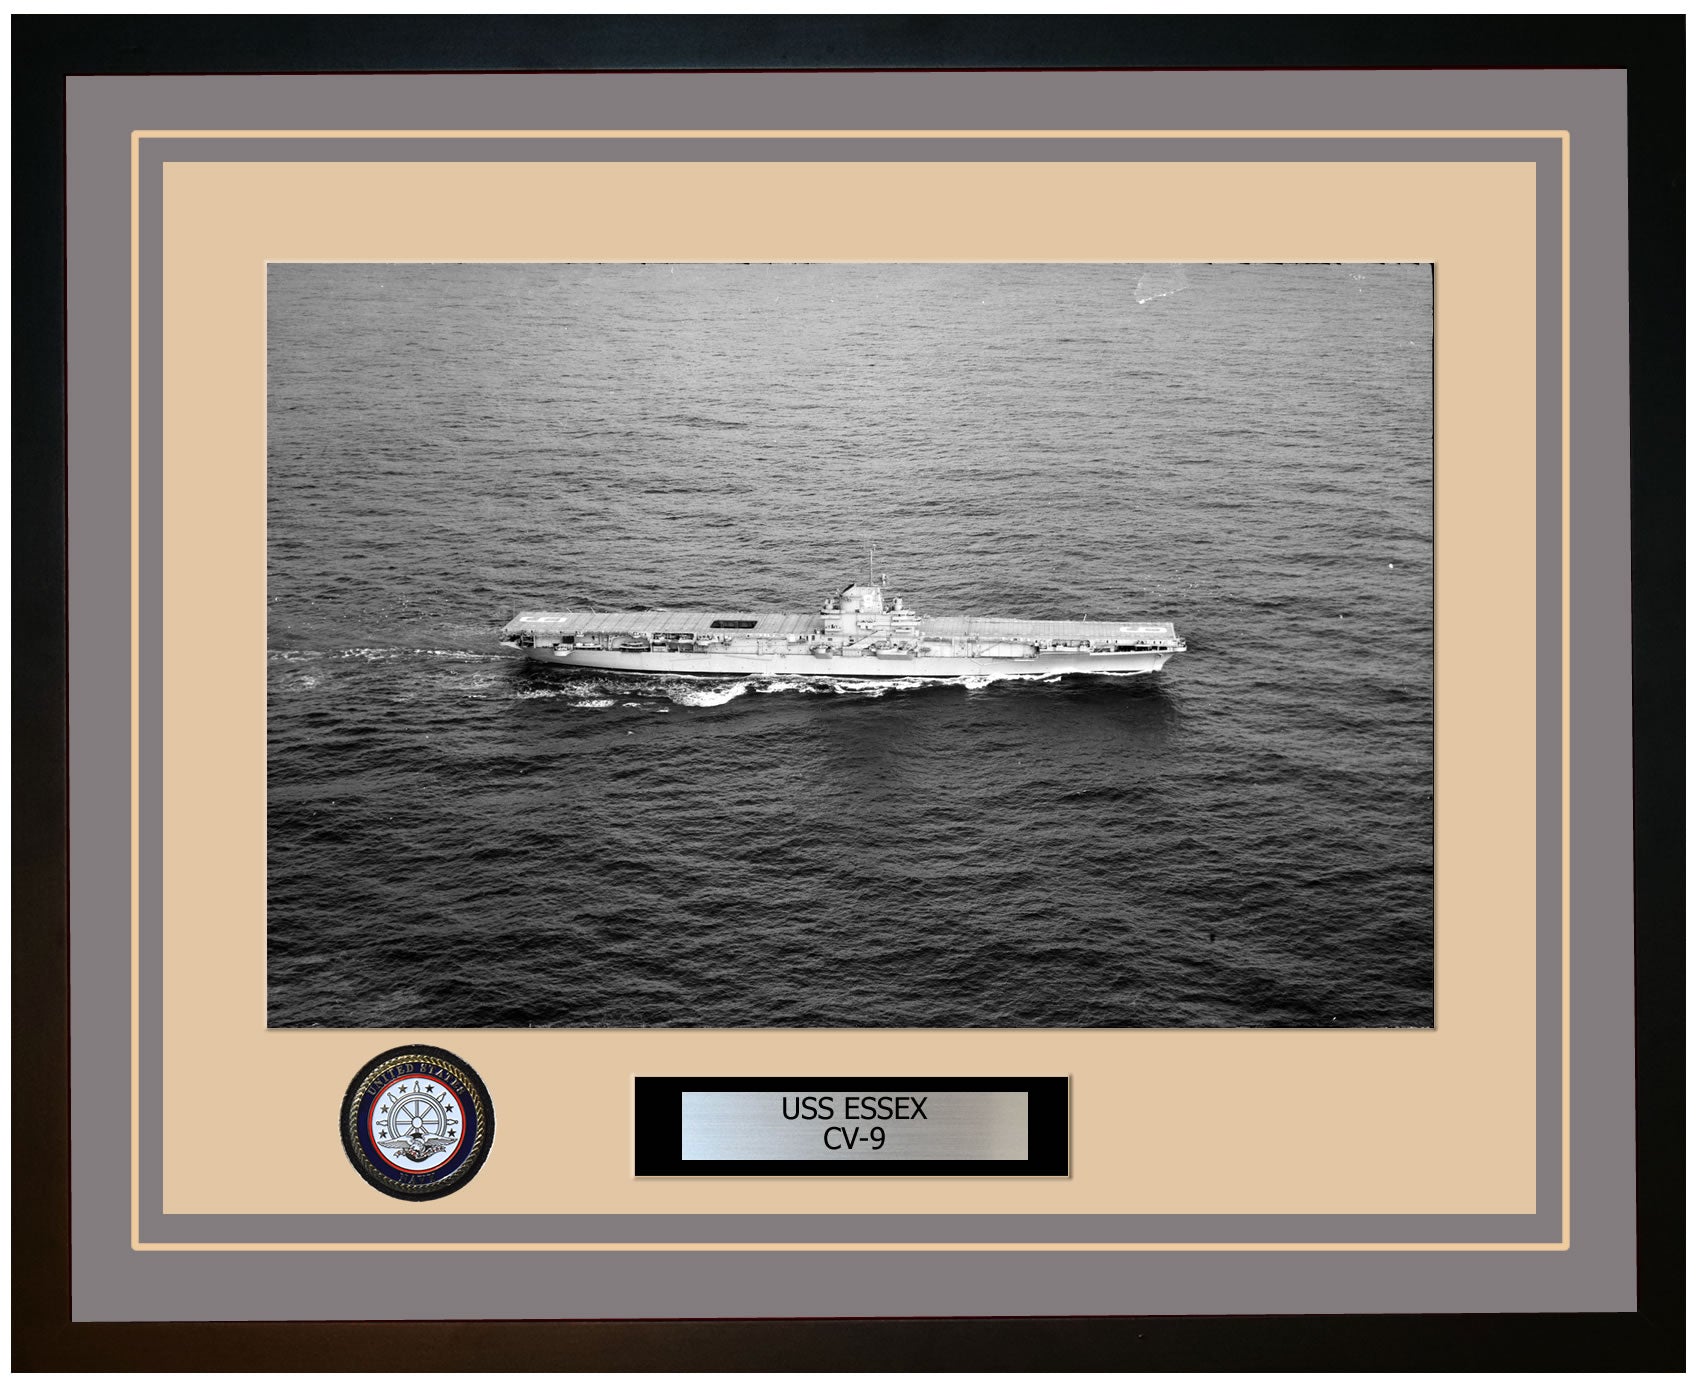 USS ESSEX CV-9 Framed Navy Ship Photo Grey